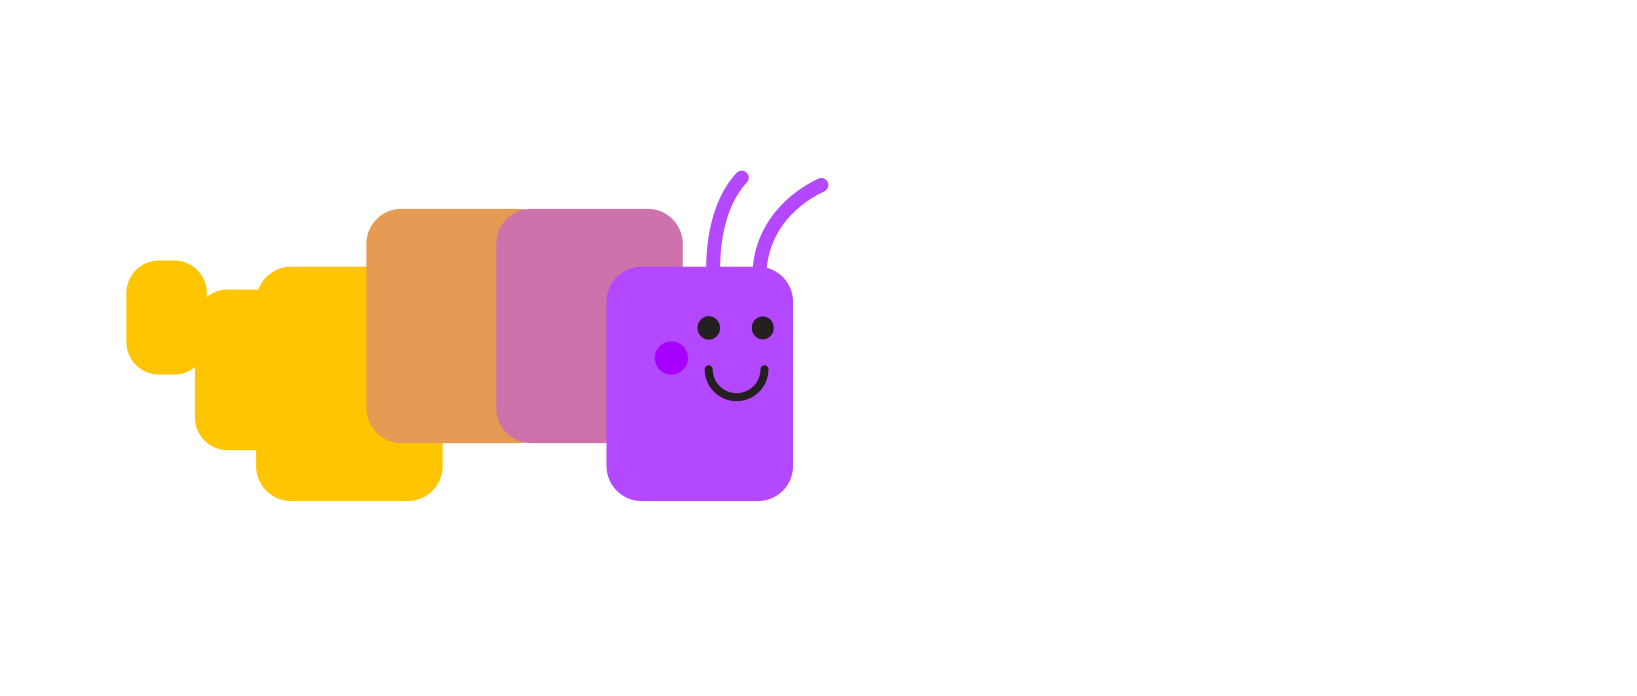 Open Web Docs logo